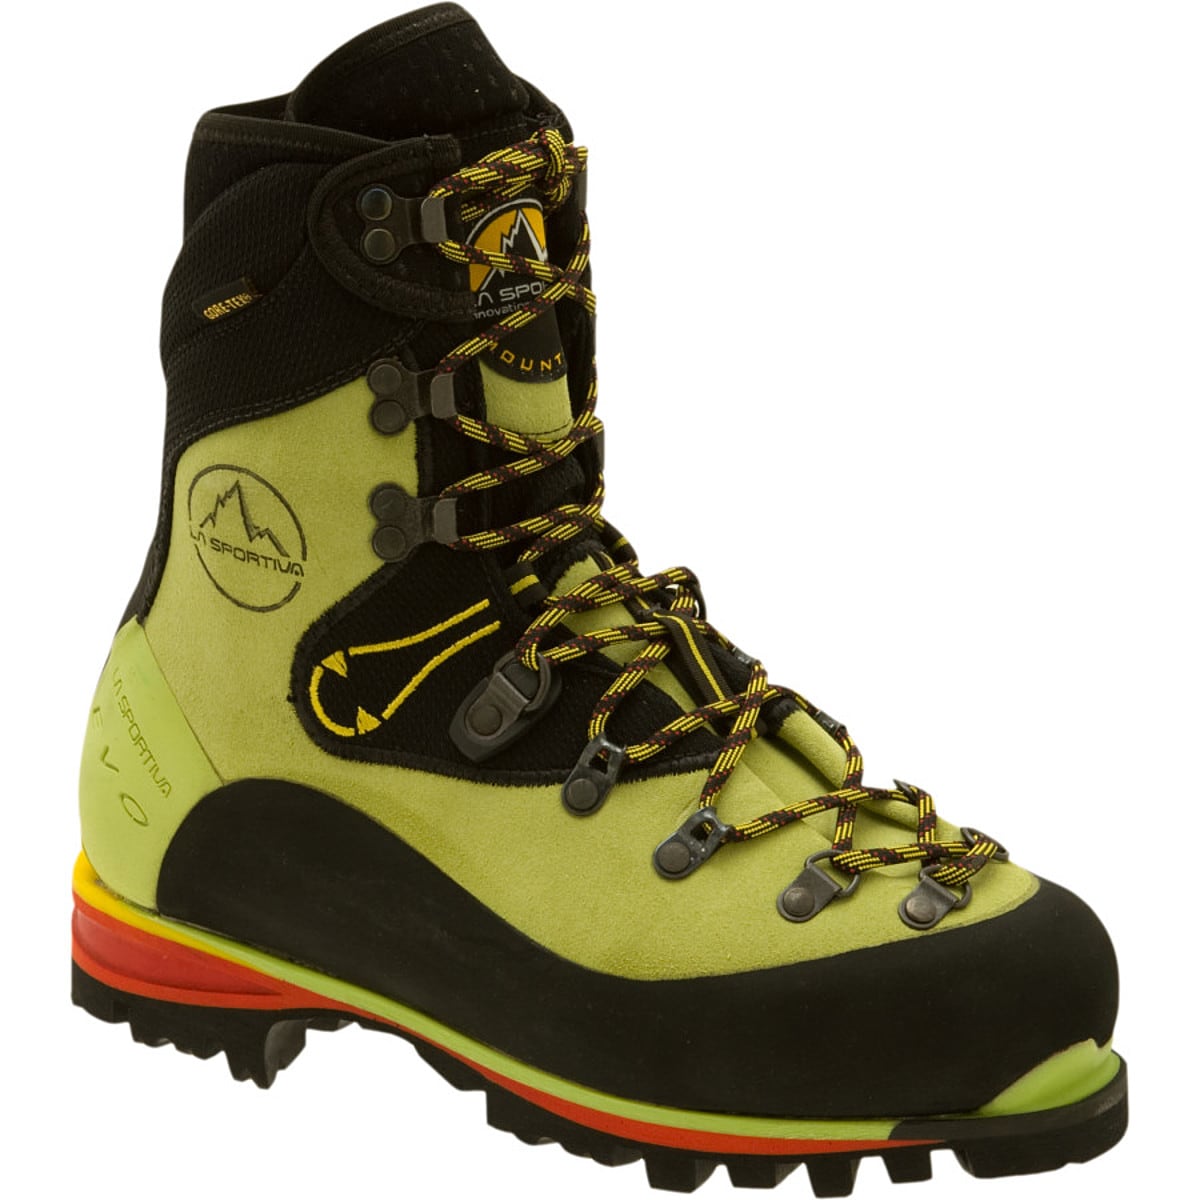 La Sportiva Nepal EVO GTX Mountaineering Boot - Women's 